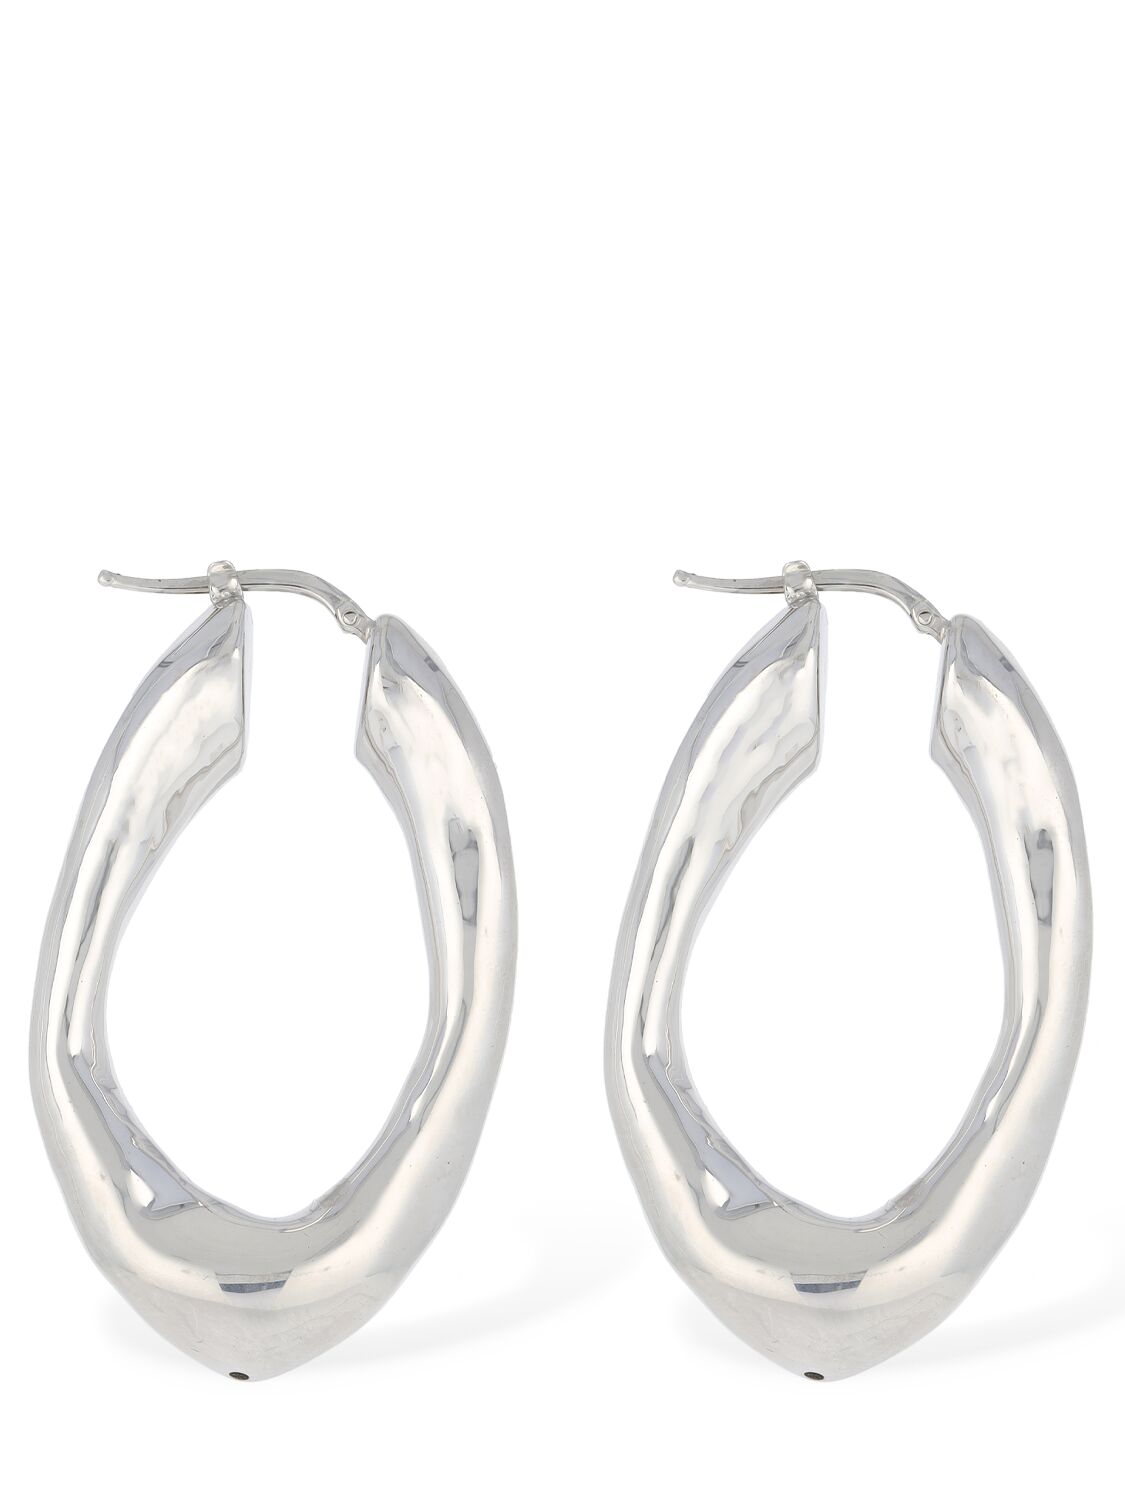 Jil Sander Bw5 2 Medium Hoop Earrings In Silver